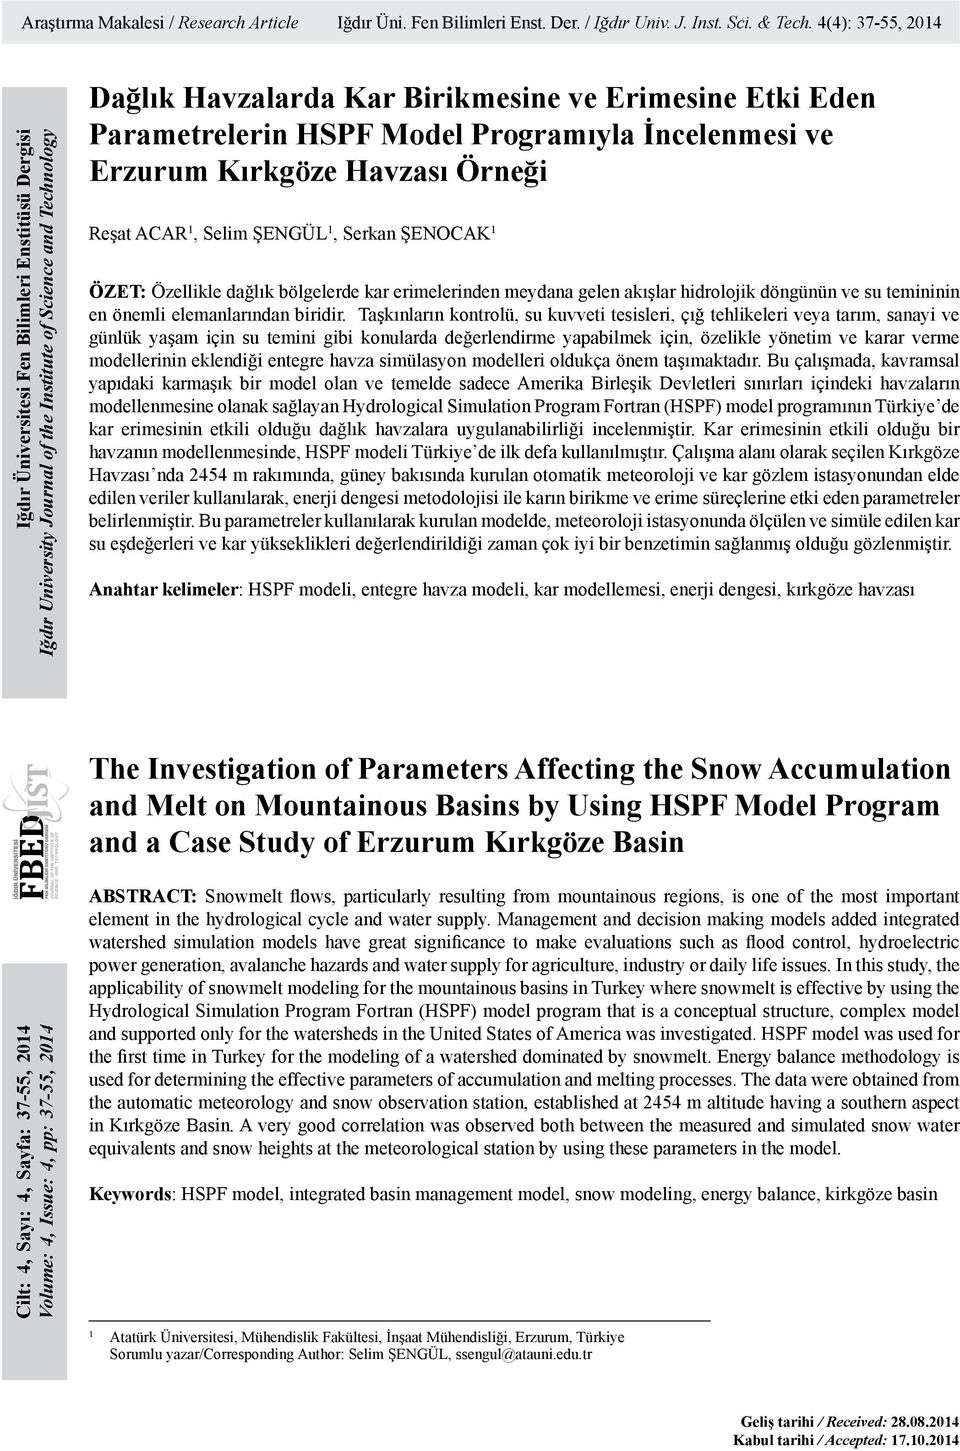 Parametrelerin HSPF Model Programıyla İncelenmesi ve Erzurum Kırkgöze Havzası Örneği Reşat ACAR 1, Selim ŞENGÜL 1, Serkan ŞENOCAK 1 ÖZET: Özellikle dağlık bölgelerde kar erimelerinden meydana gelen